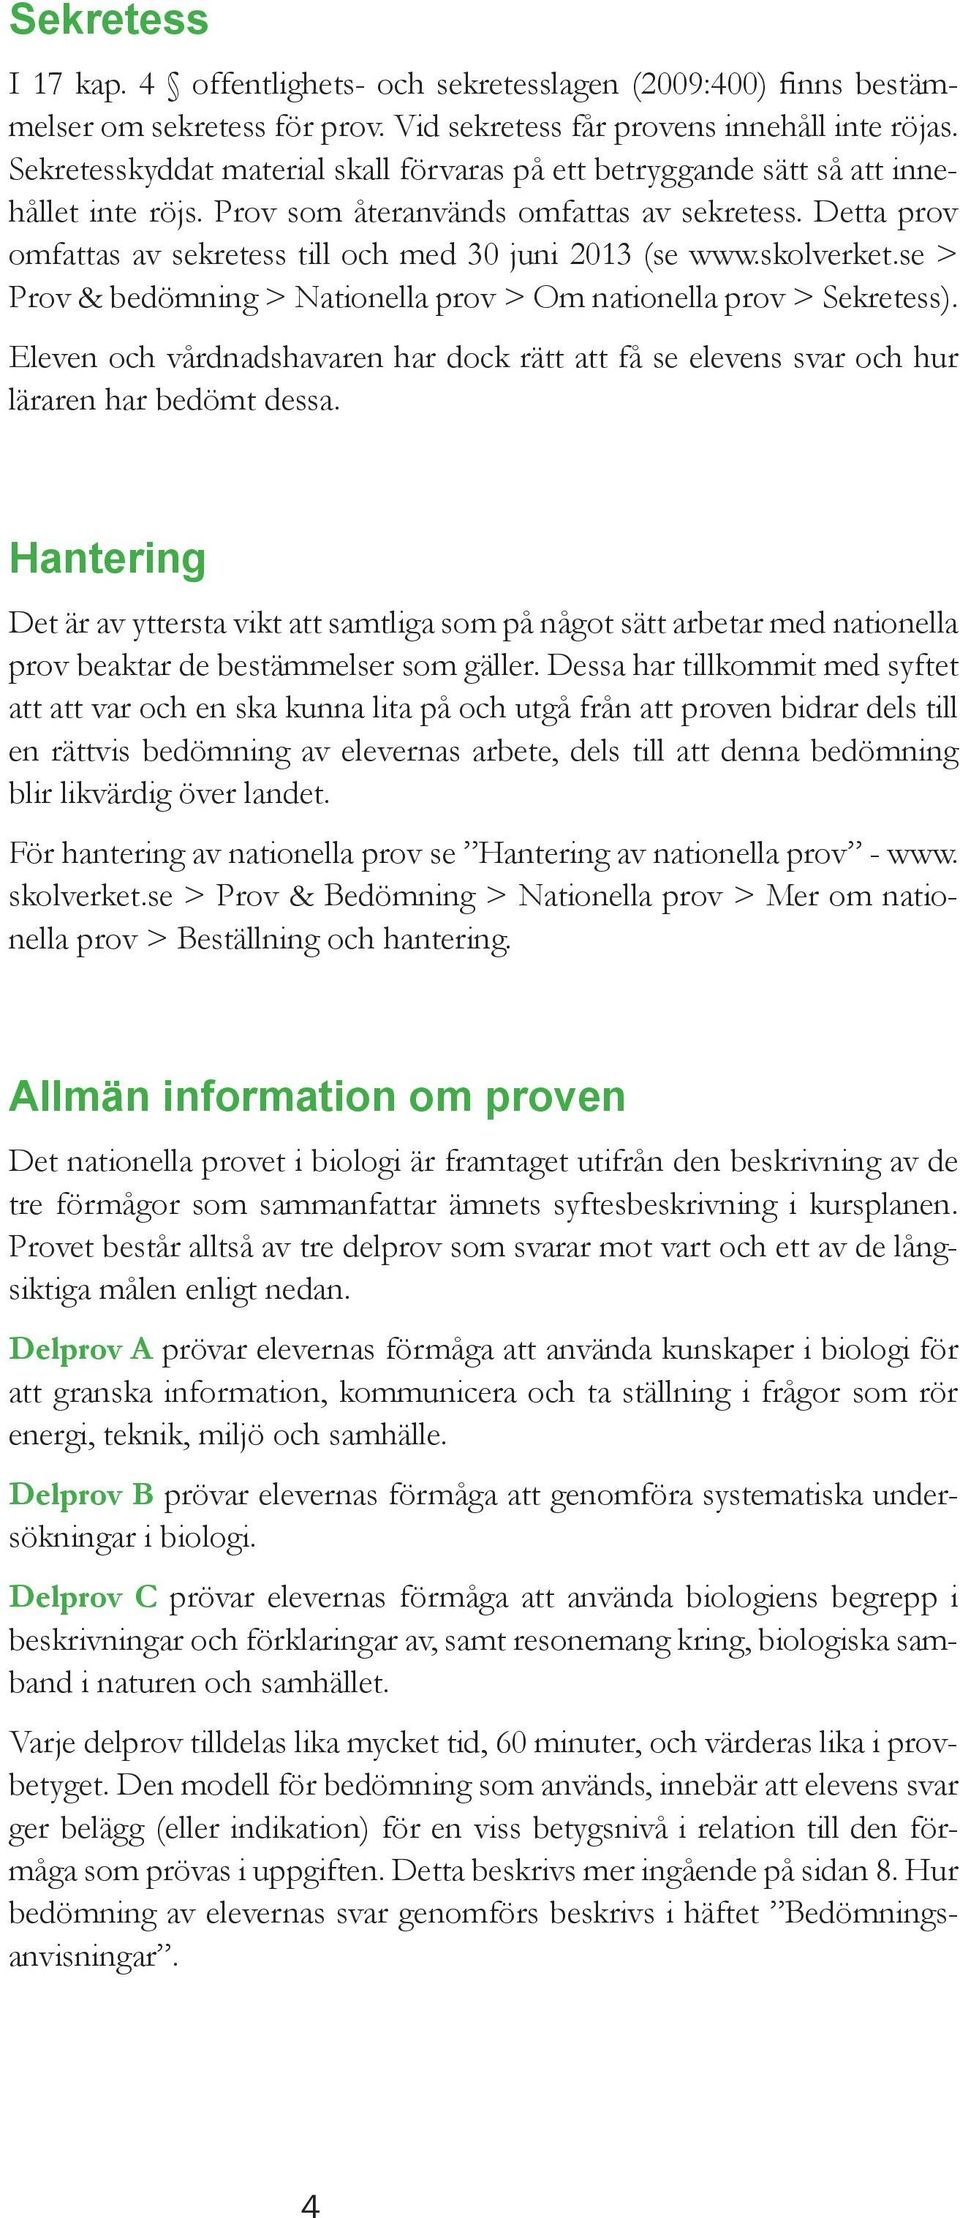 Detta prov omfattas av sekretess till och med 30 juni 2013 (se www.skolverket.se > Prov & bedömning > Nationella prov > Om nationella prov > Sekretess).